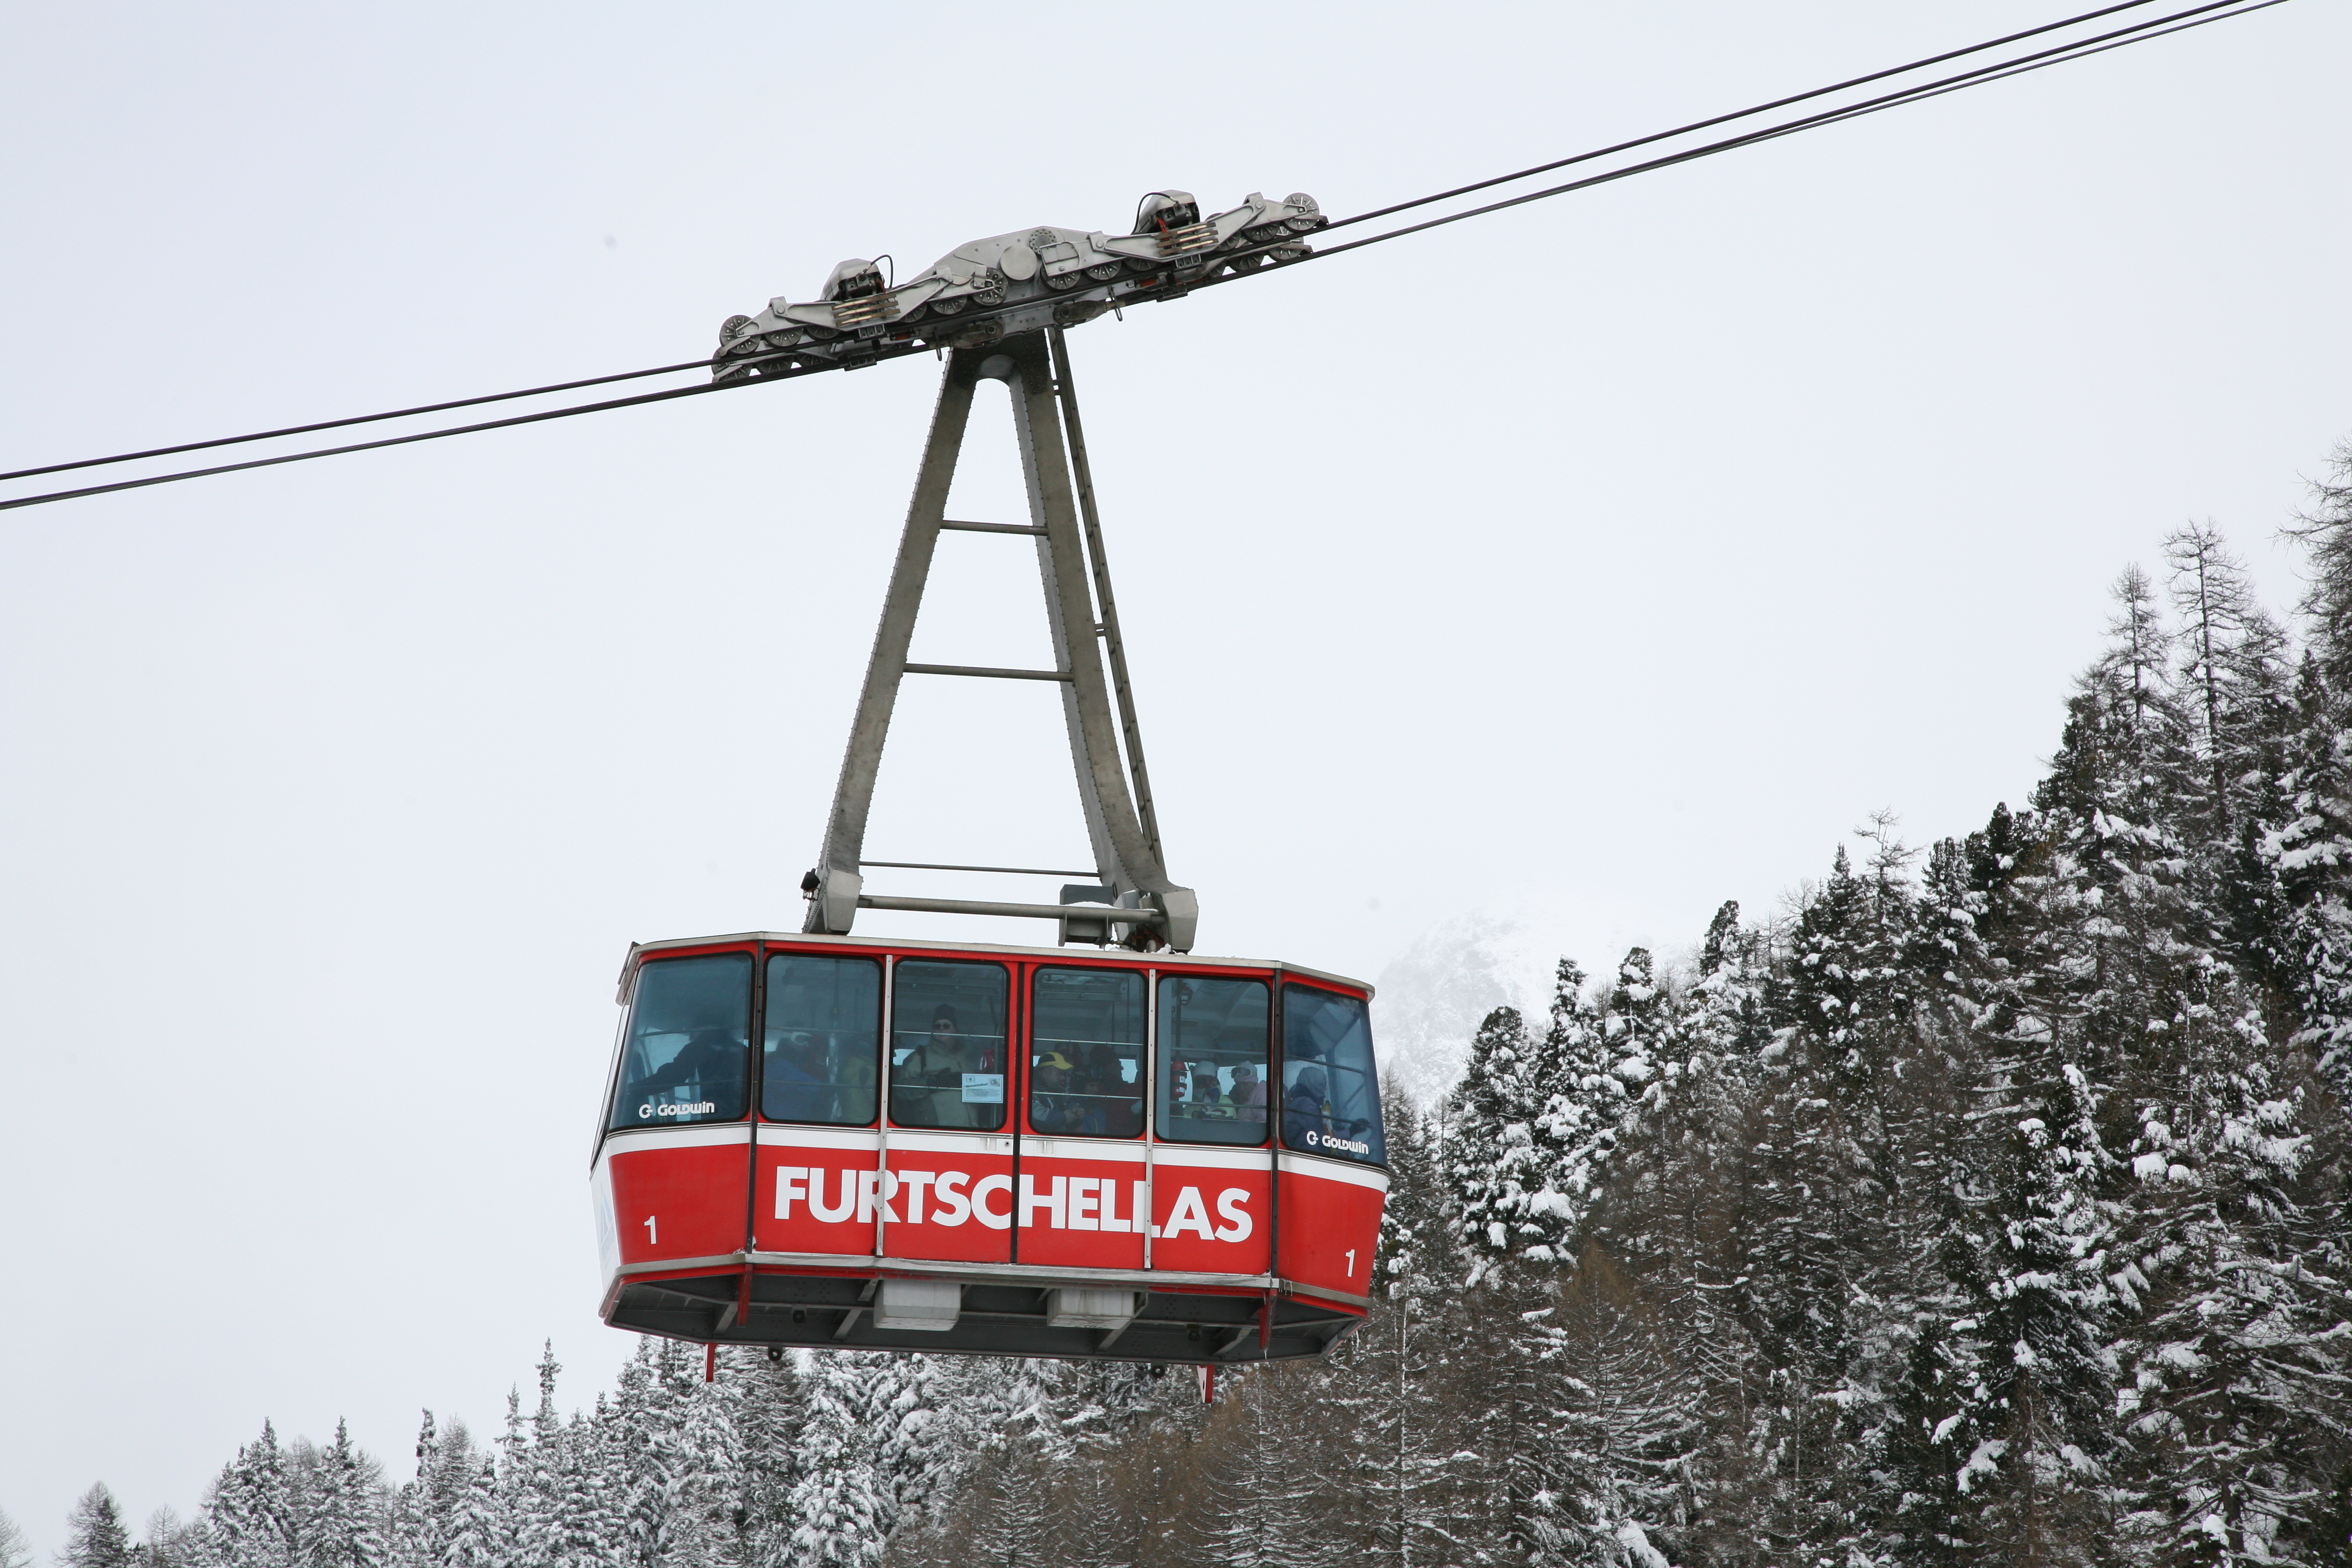 CH Furtschellas aerial tram